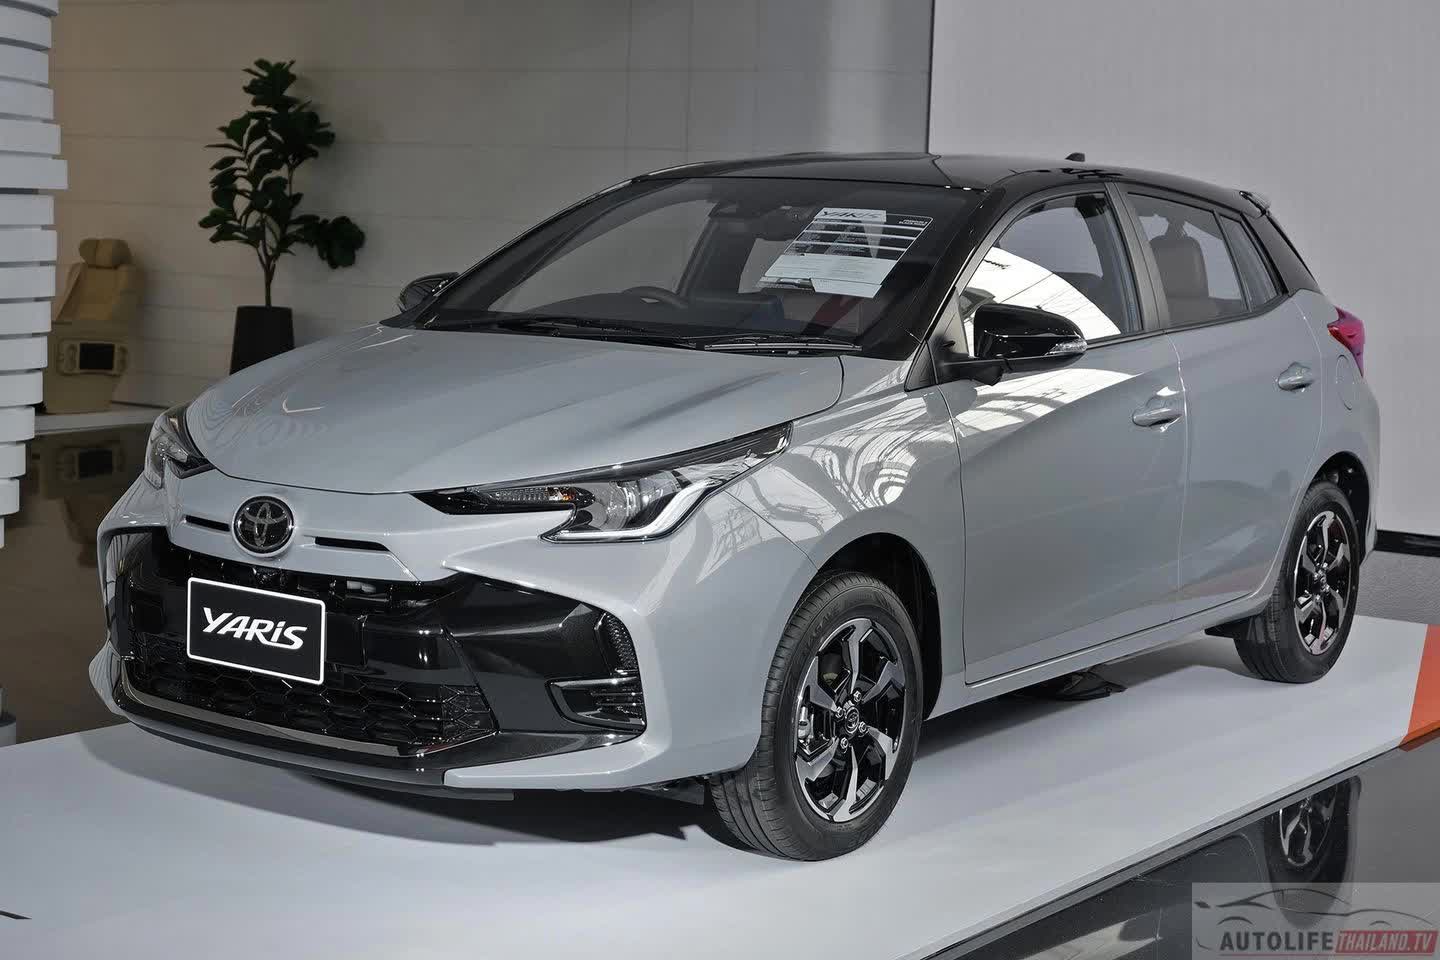 Toyota Yaris mới ra mắt này là bản xem trước Vios 2023 sắp bán ở Việt Nam: Mặt trước hầm hố, thêm công nghệ - Ảnh 2.